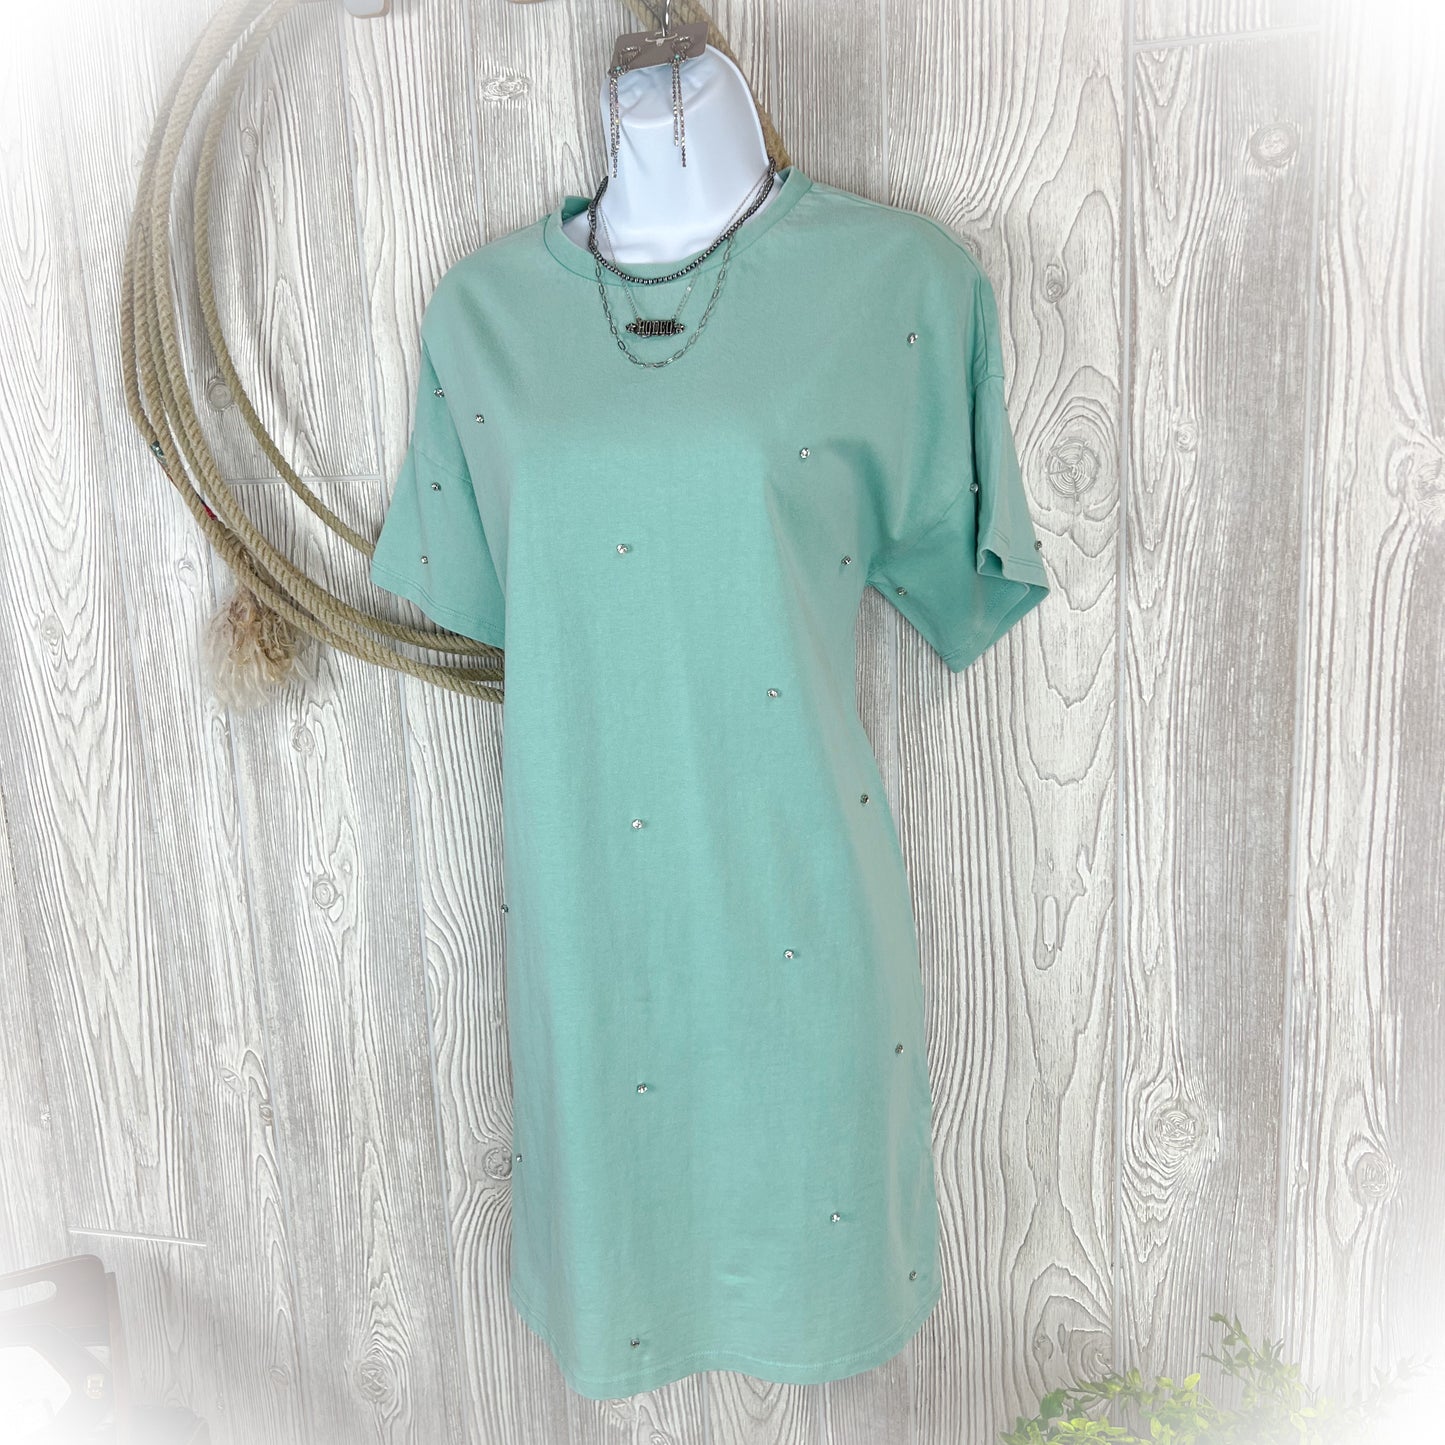 Turquoise Rhinestone - Tee Shirt Dress